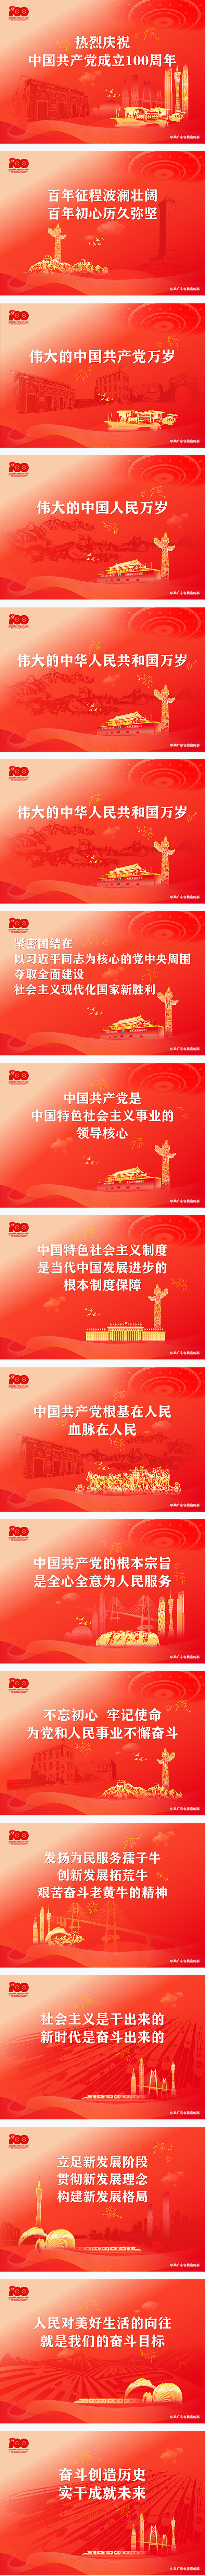 2.庆祝中国共产党成立100周年宣传画（横版）.jpg